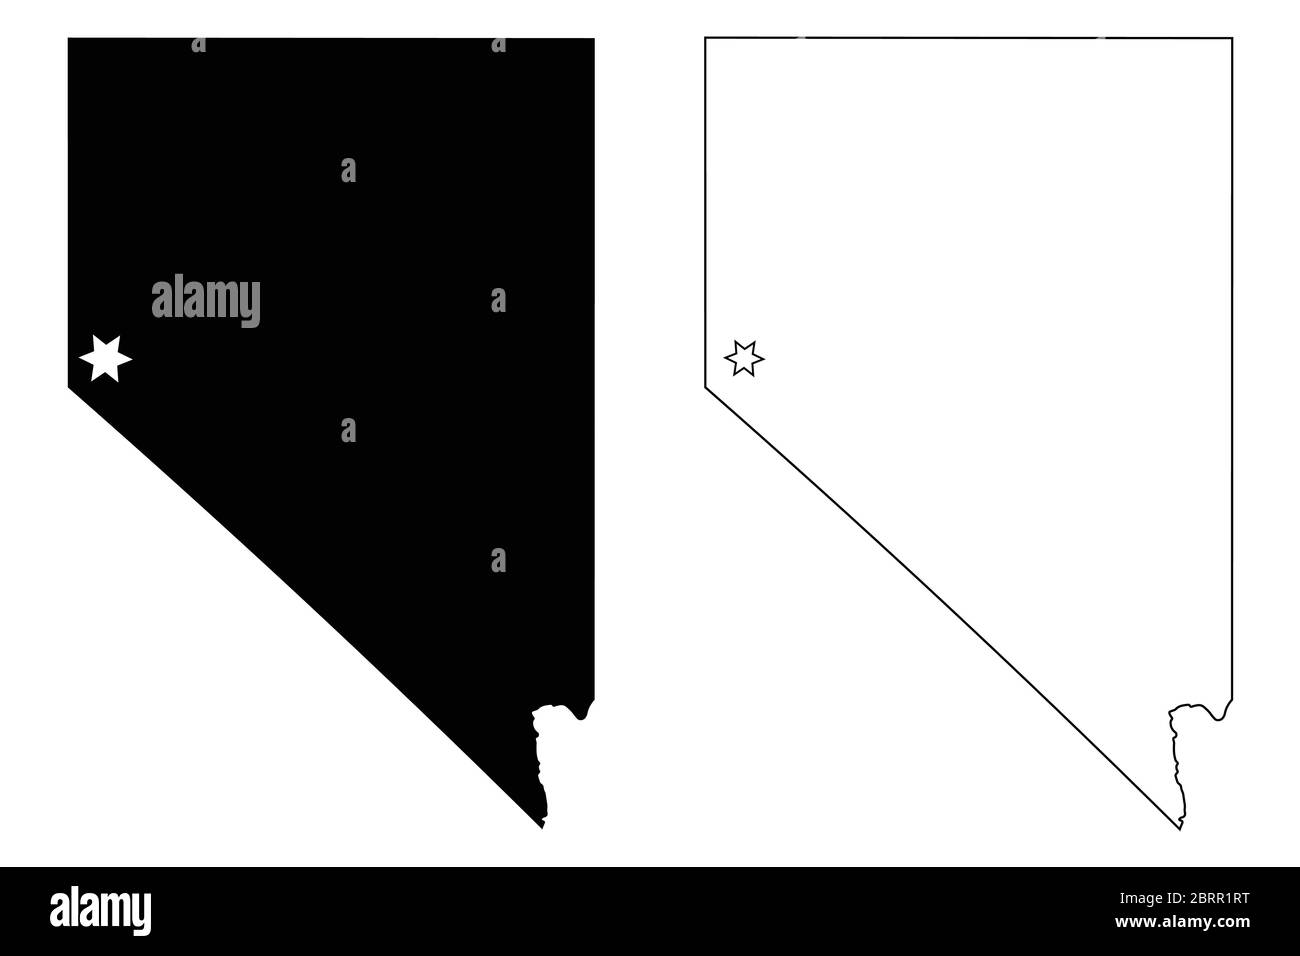 Nevada NV State Map USA mit Capital City Star in Carson City. Schwarze Silhouette und Umriss isoliert auf weißem Hintergrund. EPS-Vektor Stock Vektor